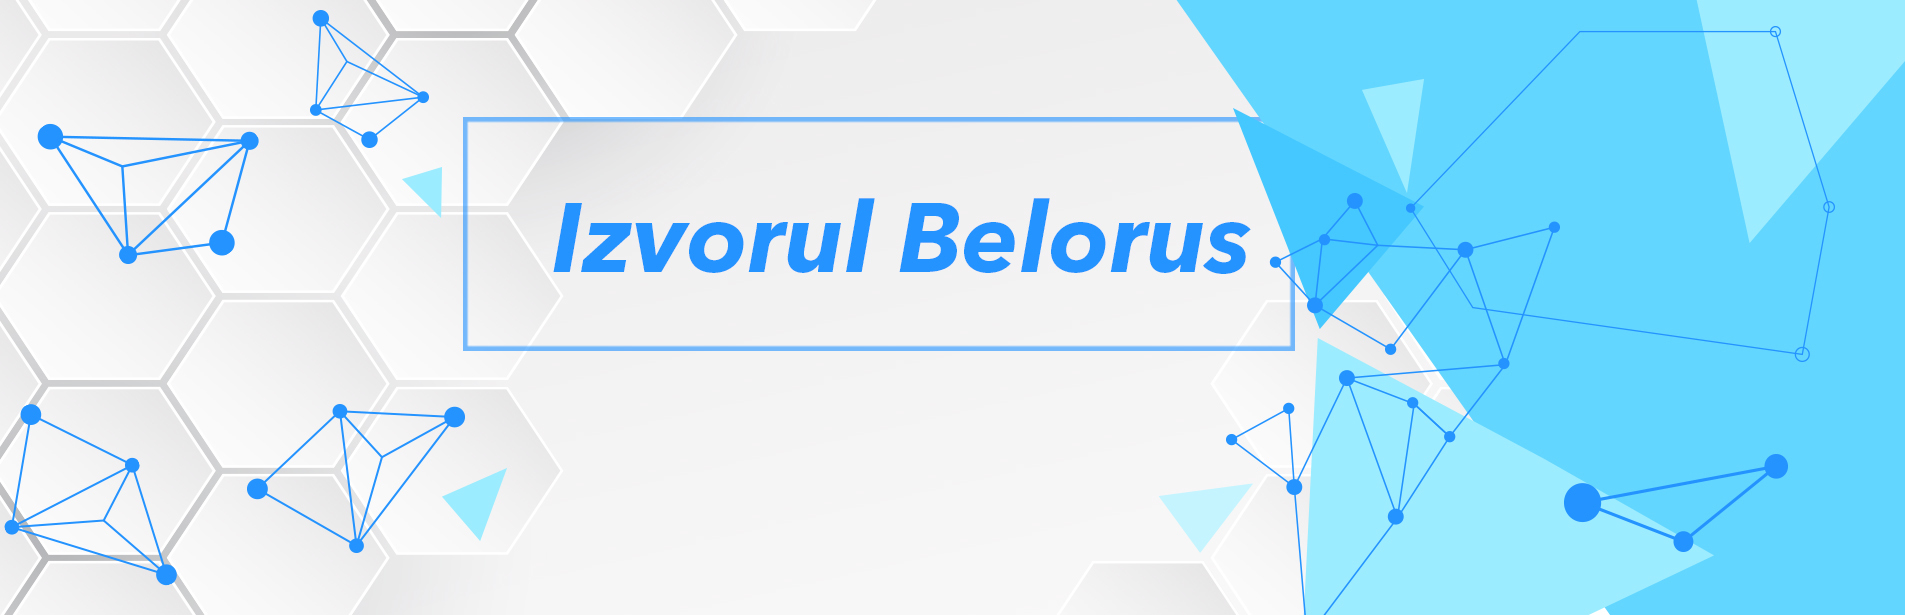 IZVORUL BELORUS din 1 iunie 2022. Şcoala de duminică belorusă.